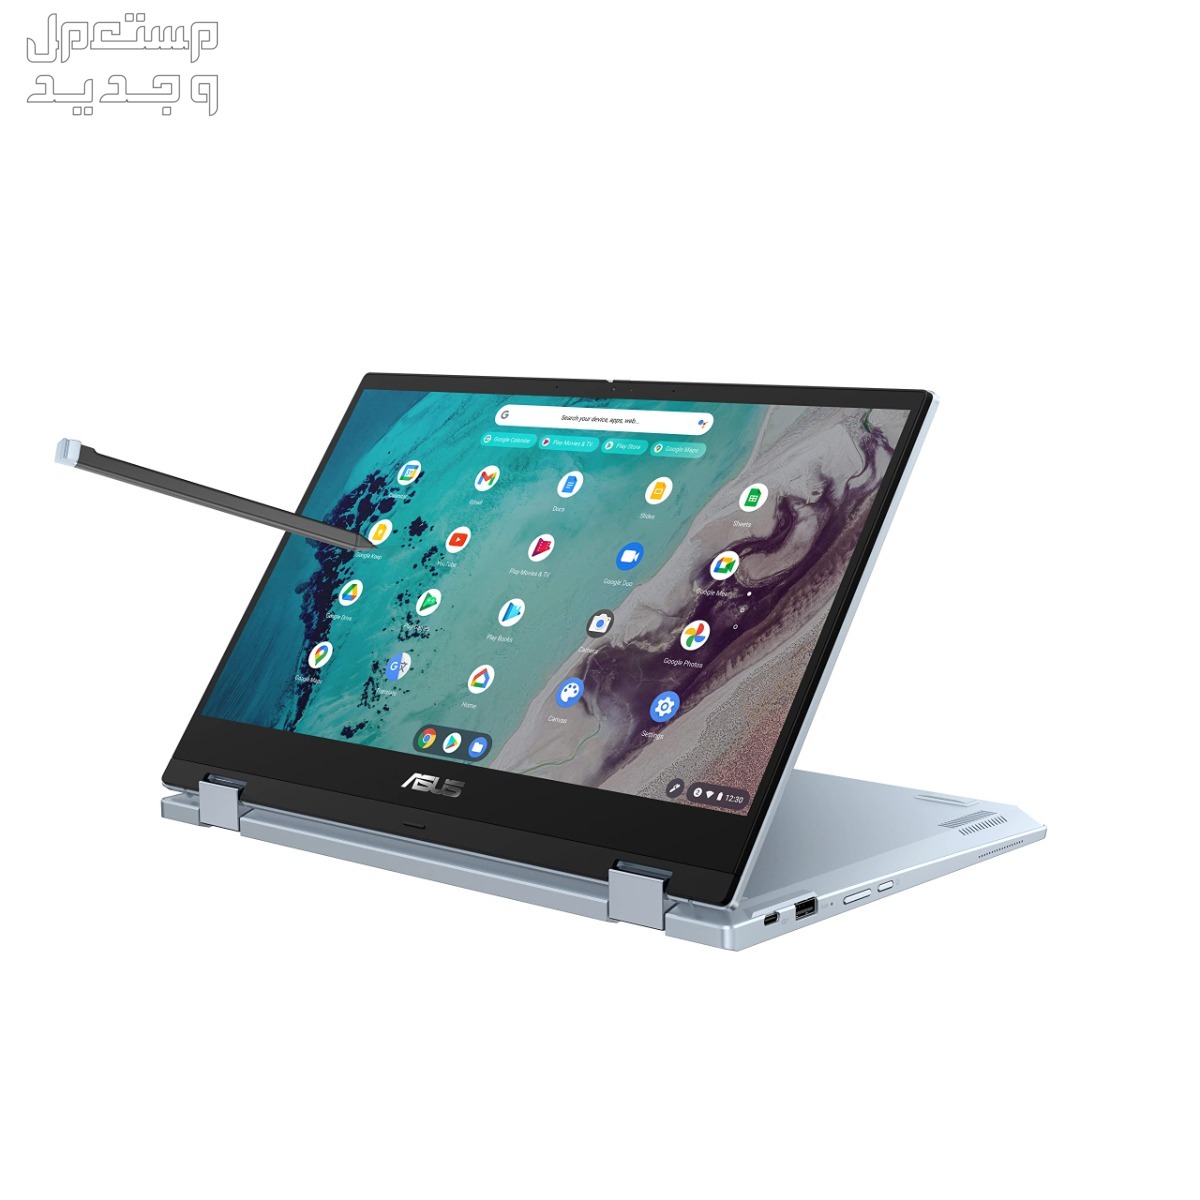 تعرف على أفضل لاب توب للبرمجة بسعر رخيص 2024 في عمان Asus Chromebook Flip CX3